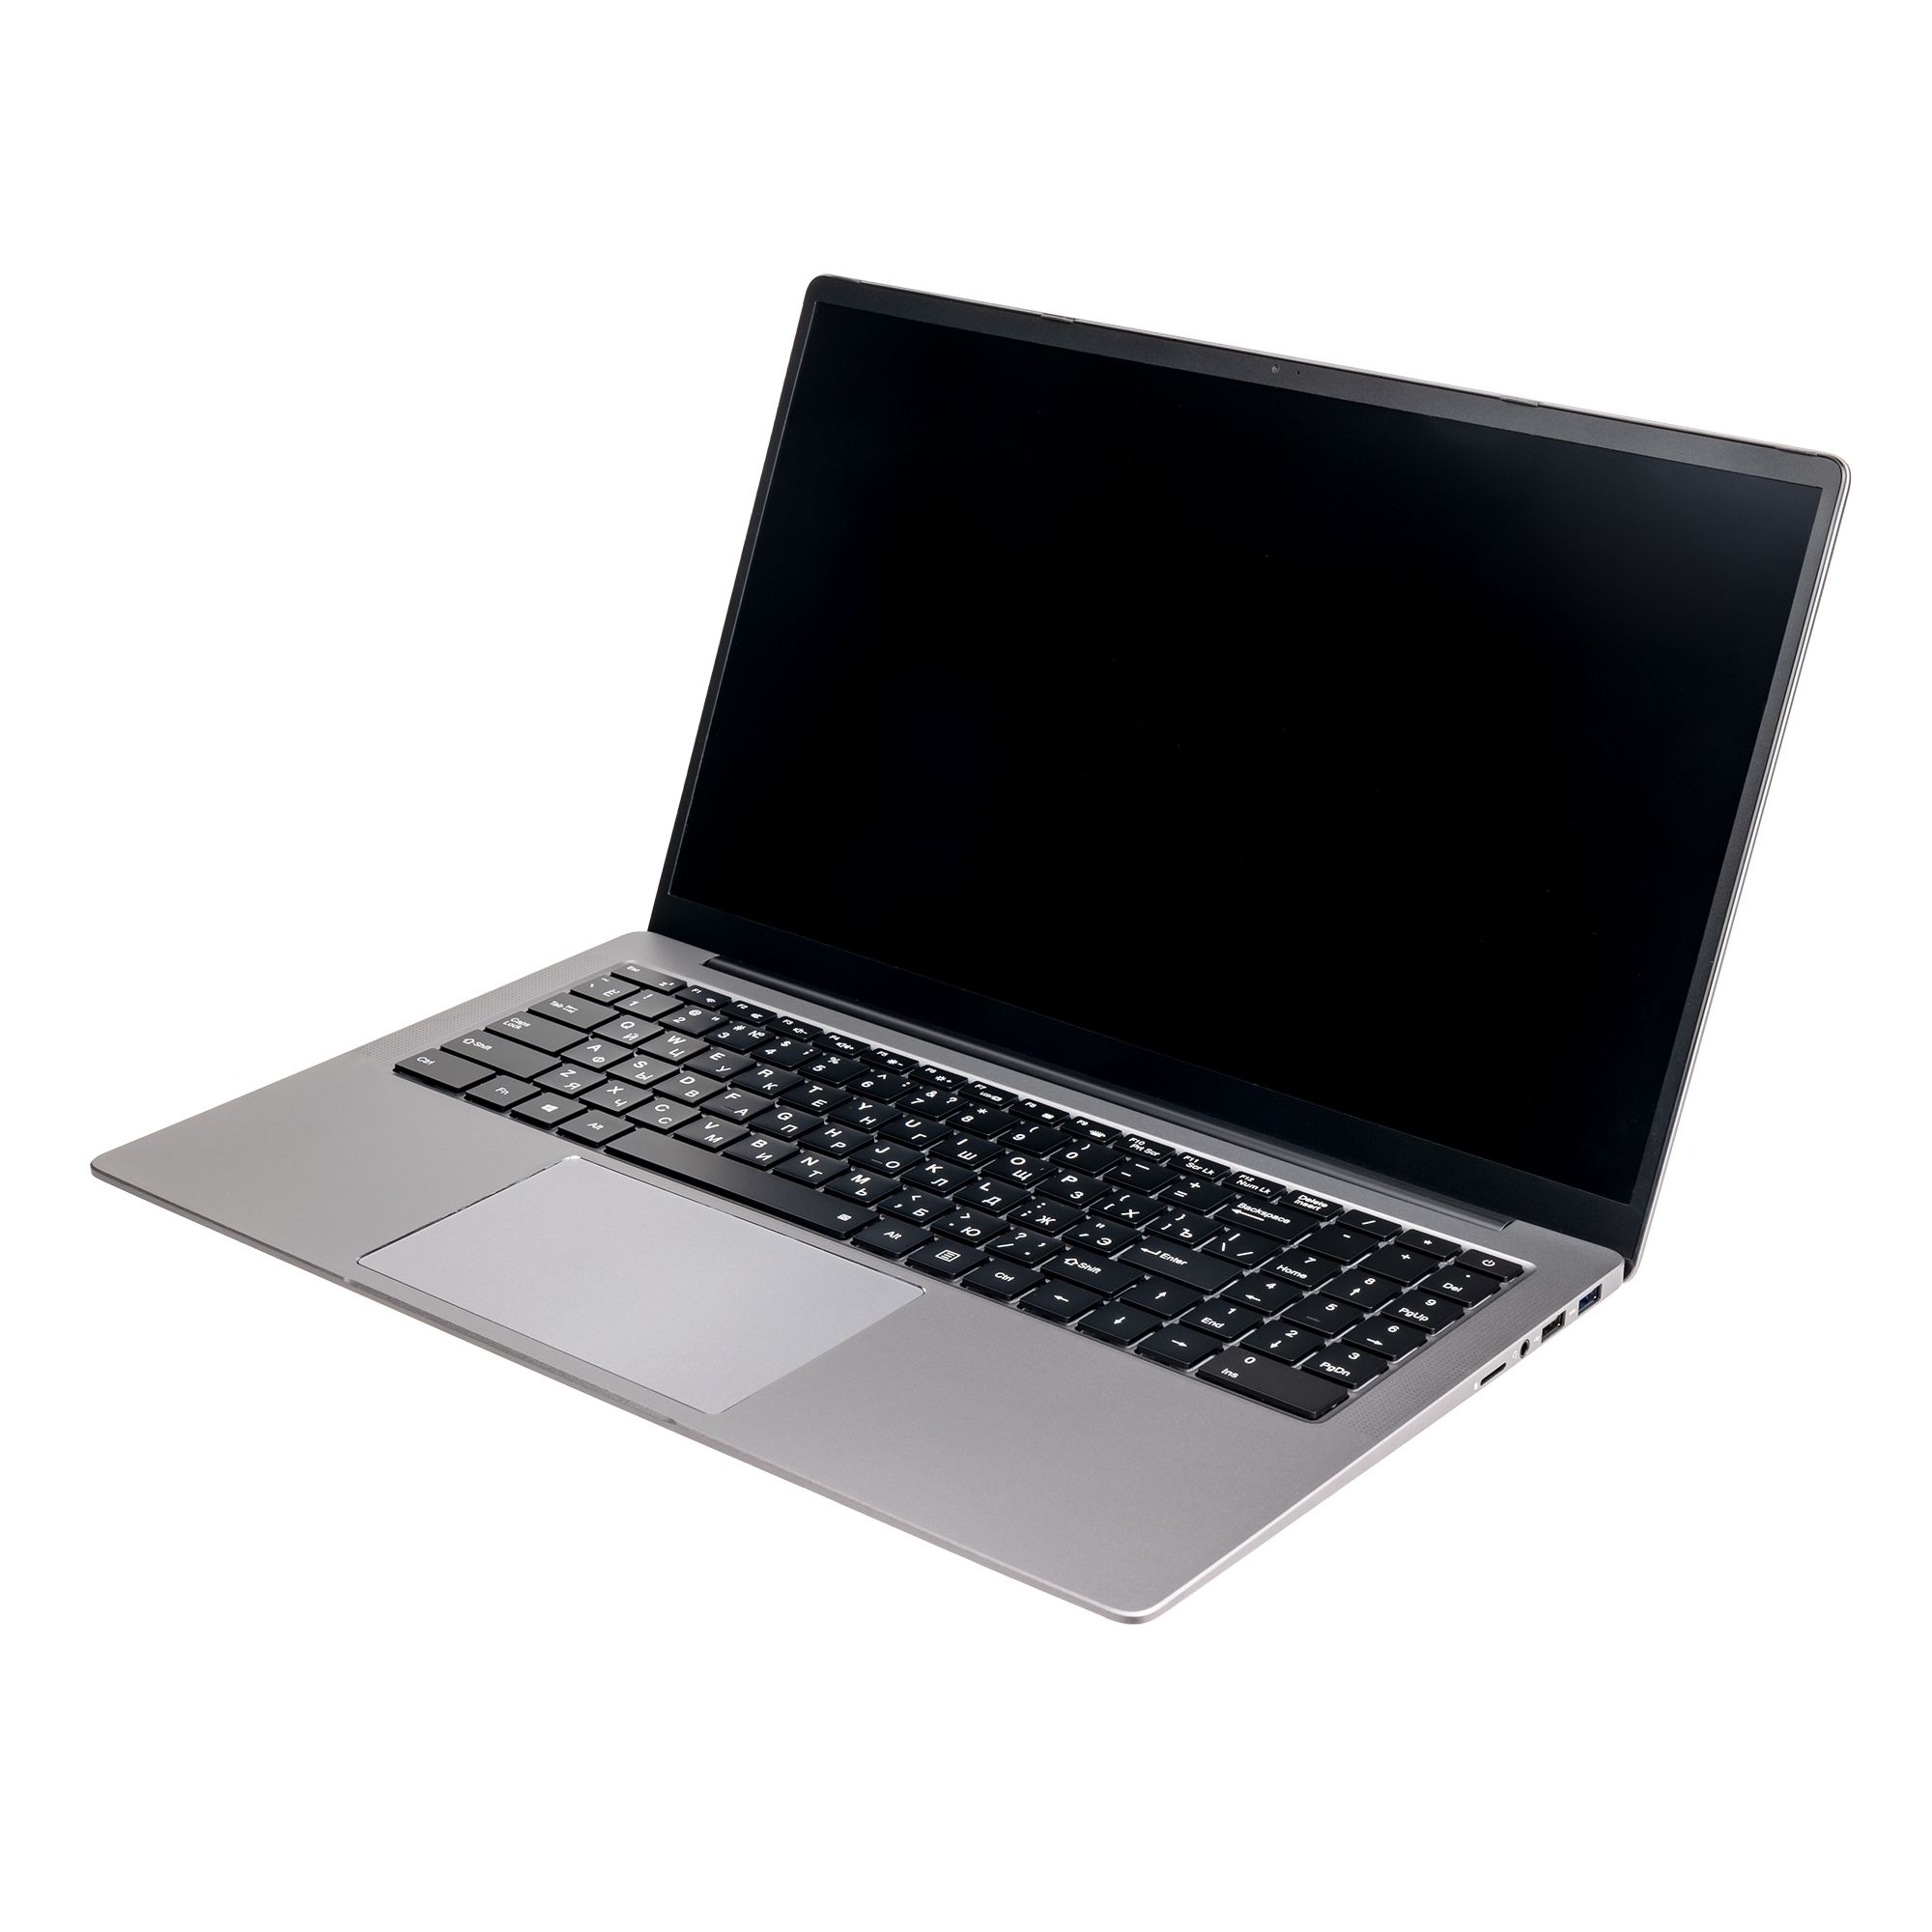 Ноутбук Hiper Expertbook MTL1601 (MTL1601D1235UDS) ноутбук hiper expertbook mtl1601 noos silver mtl1601a1235uds